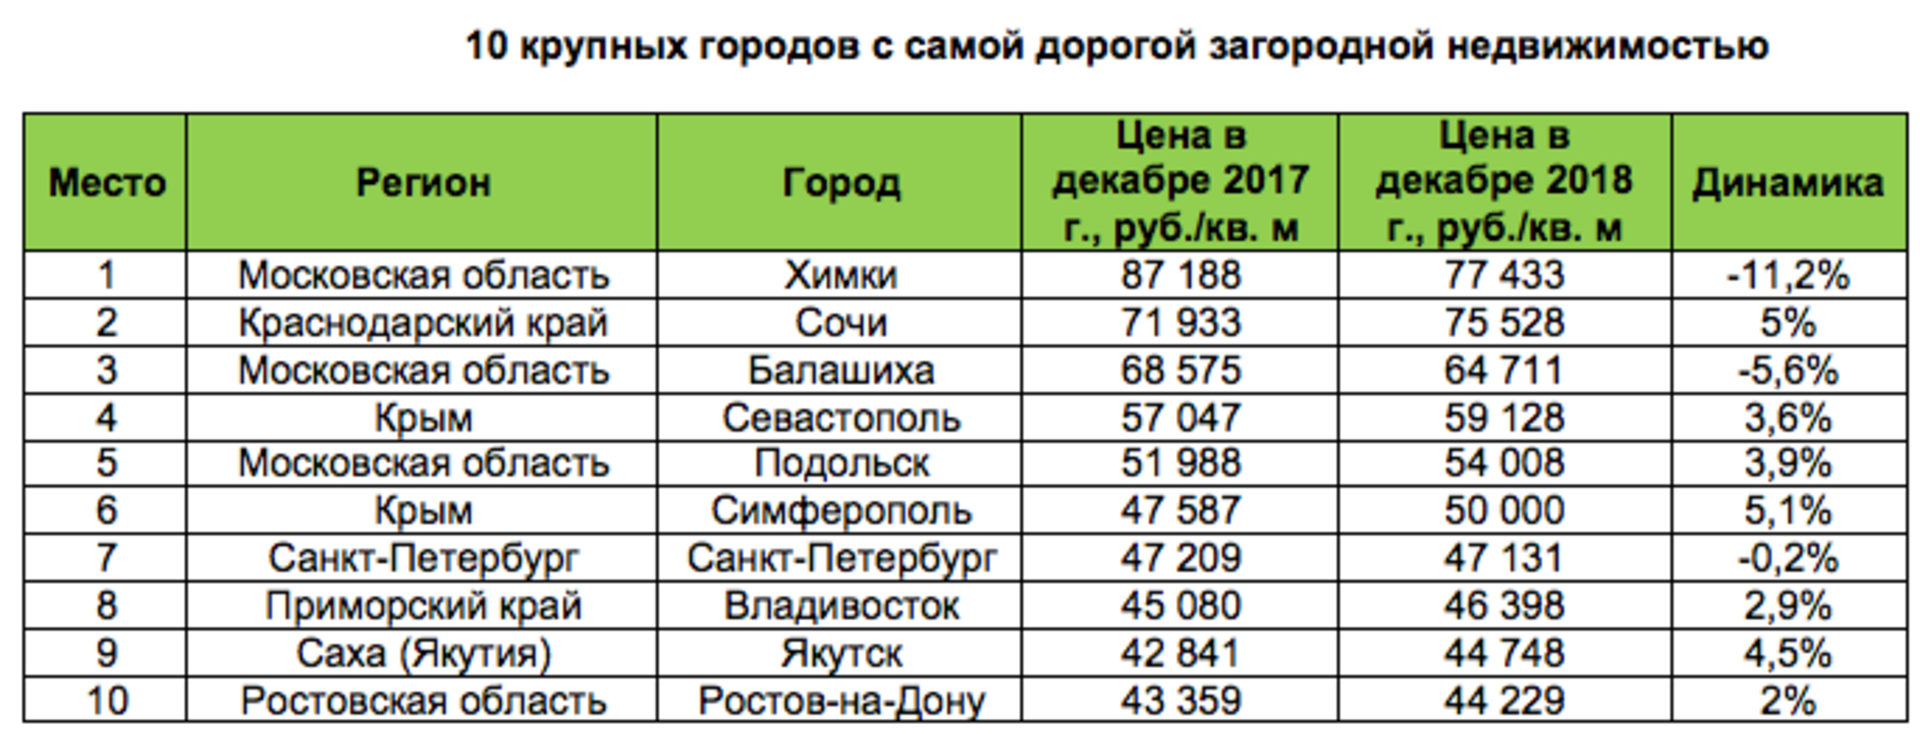 Какая дешевая. Топ 10 городов с дешевой недвижимостью. Самый дешевый город в России. Город с дешевыми квартирами. Самая дешевая недвижимость в России список.